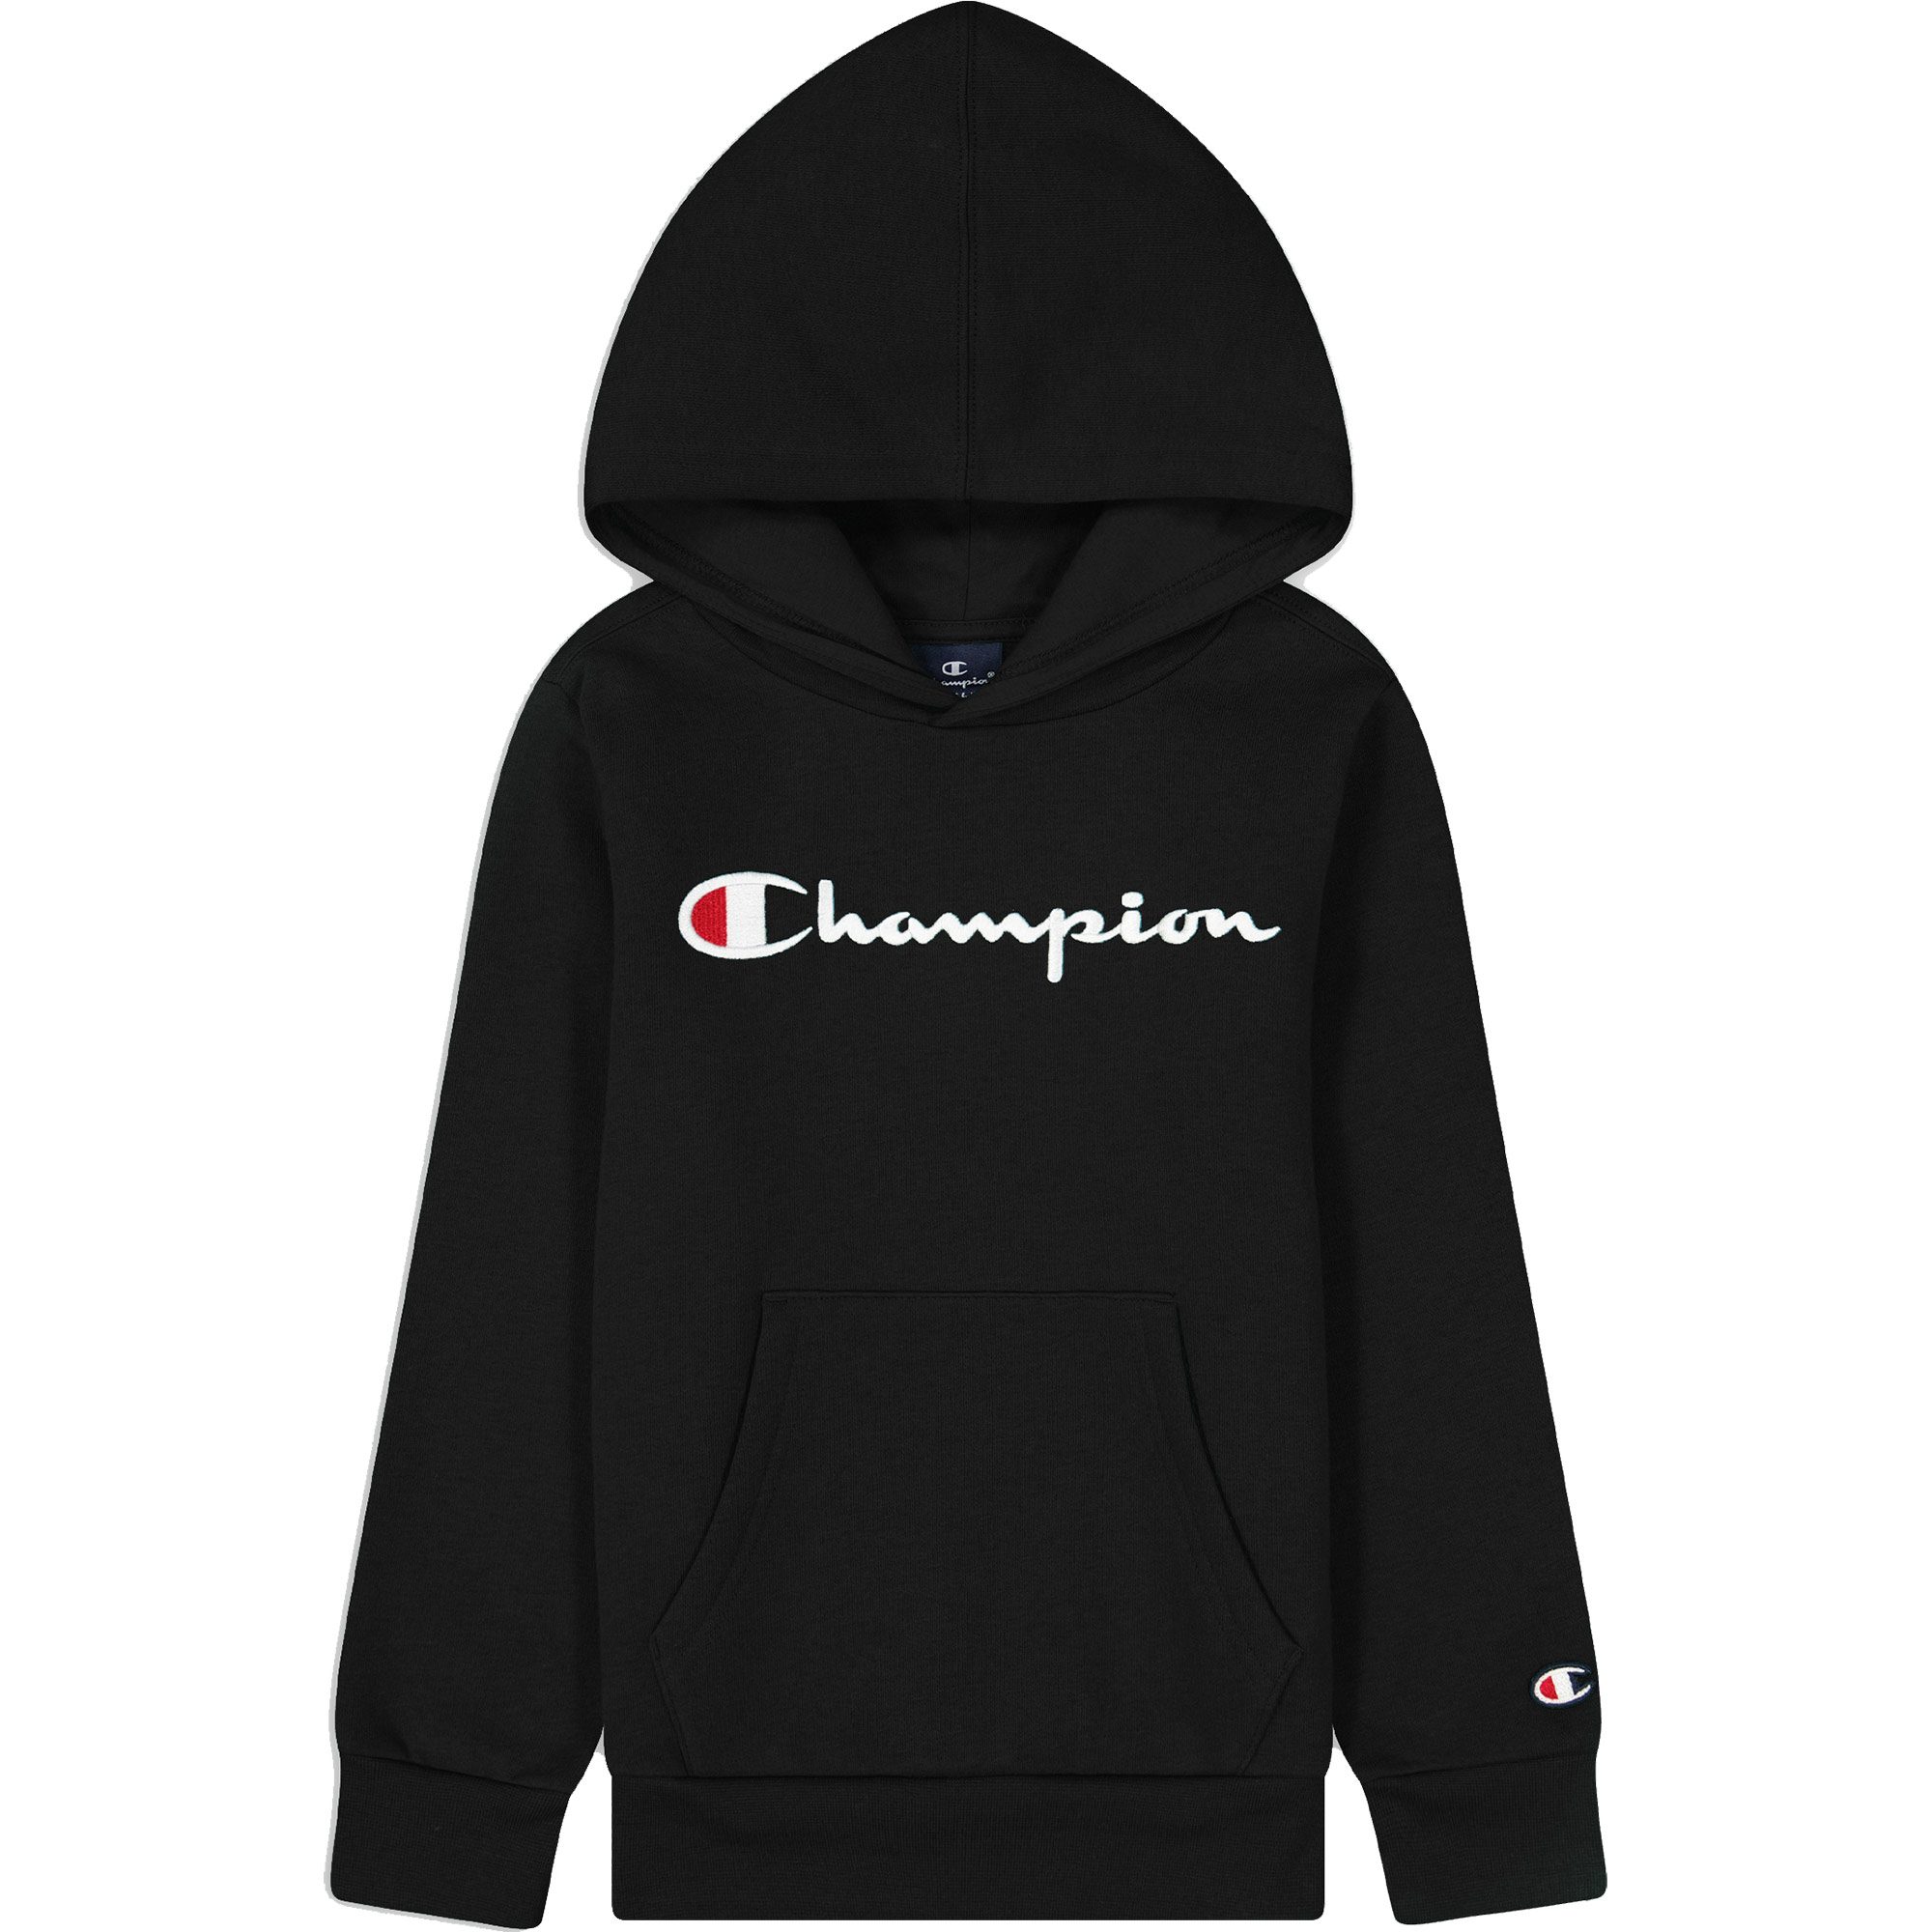 Champion - Hooded Sweatshirt Jungen black beauty kaufen im Sport Bittl Shop